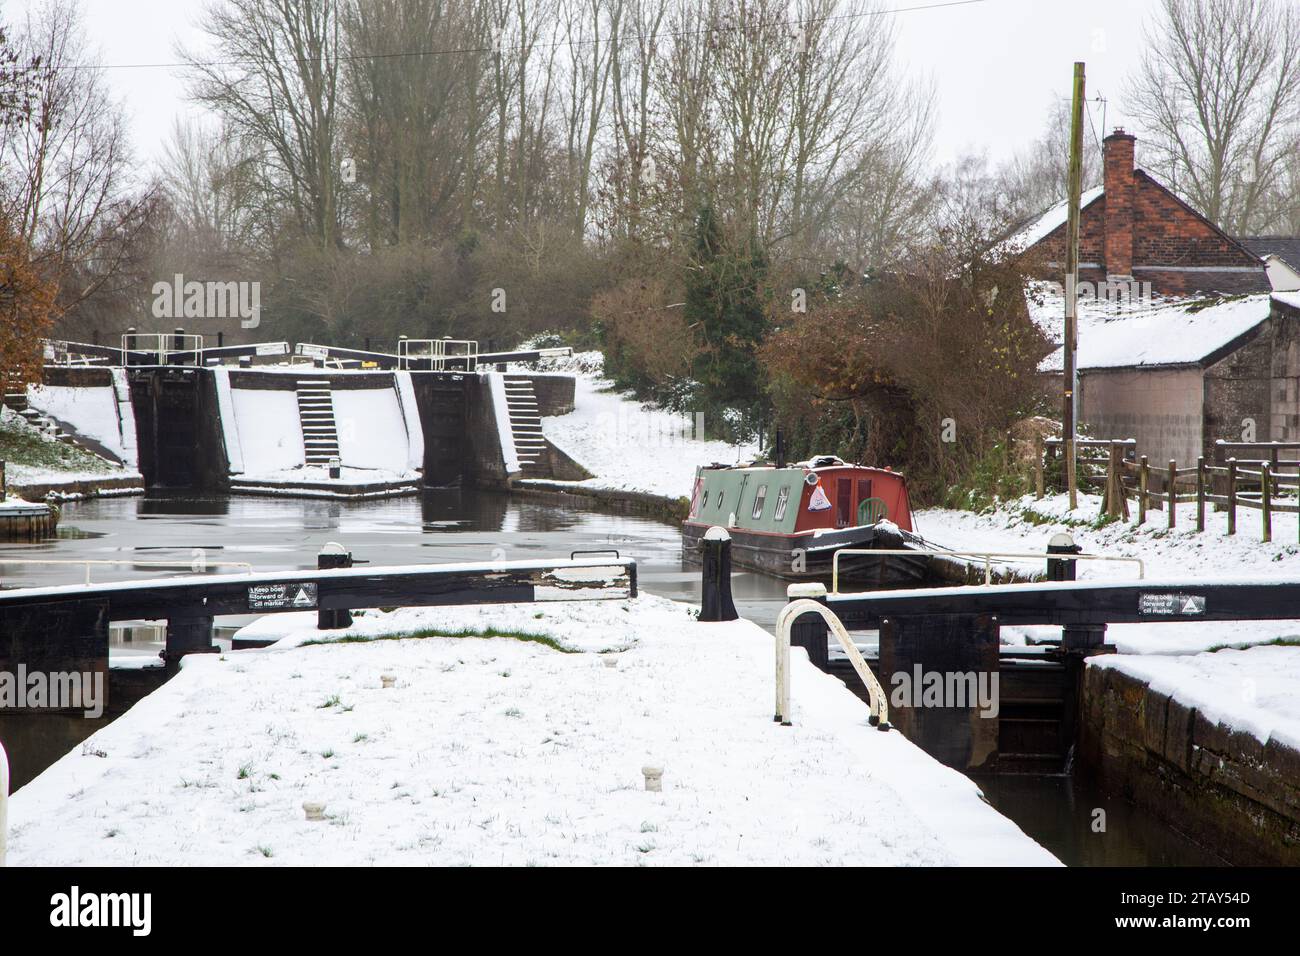 Canal narrowboat ormeggiato sul canale Trent e Mersey nella neve durante l'inverno a Wheelock Locks Cheshire Inghilterra Regno Unito Foto Stock